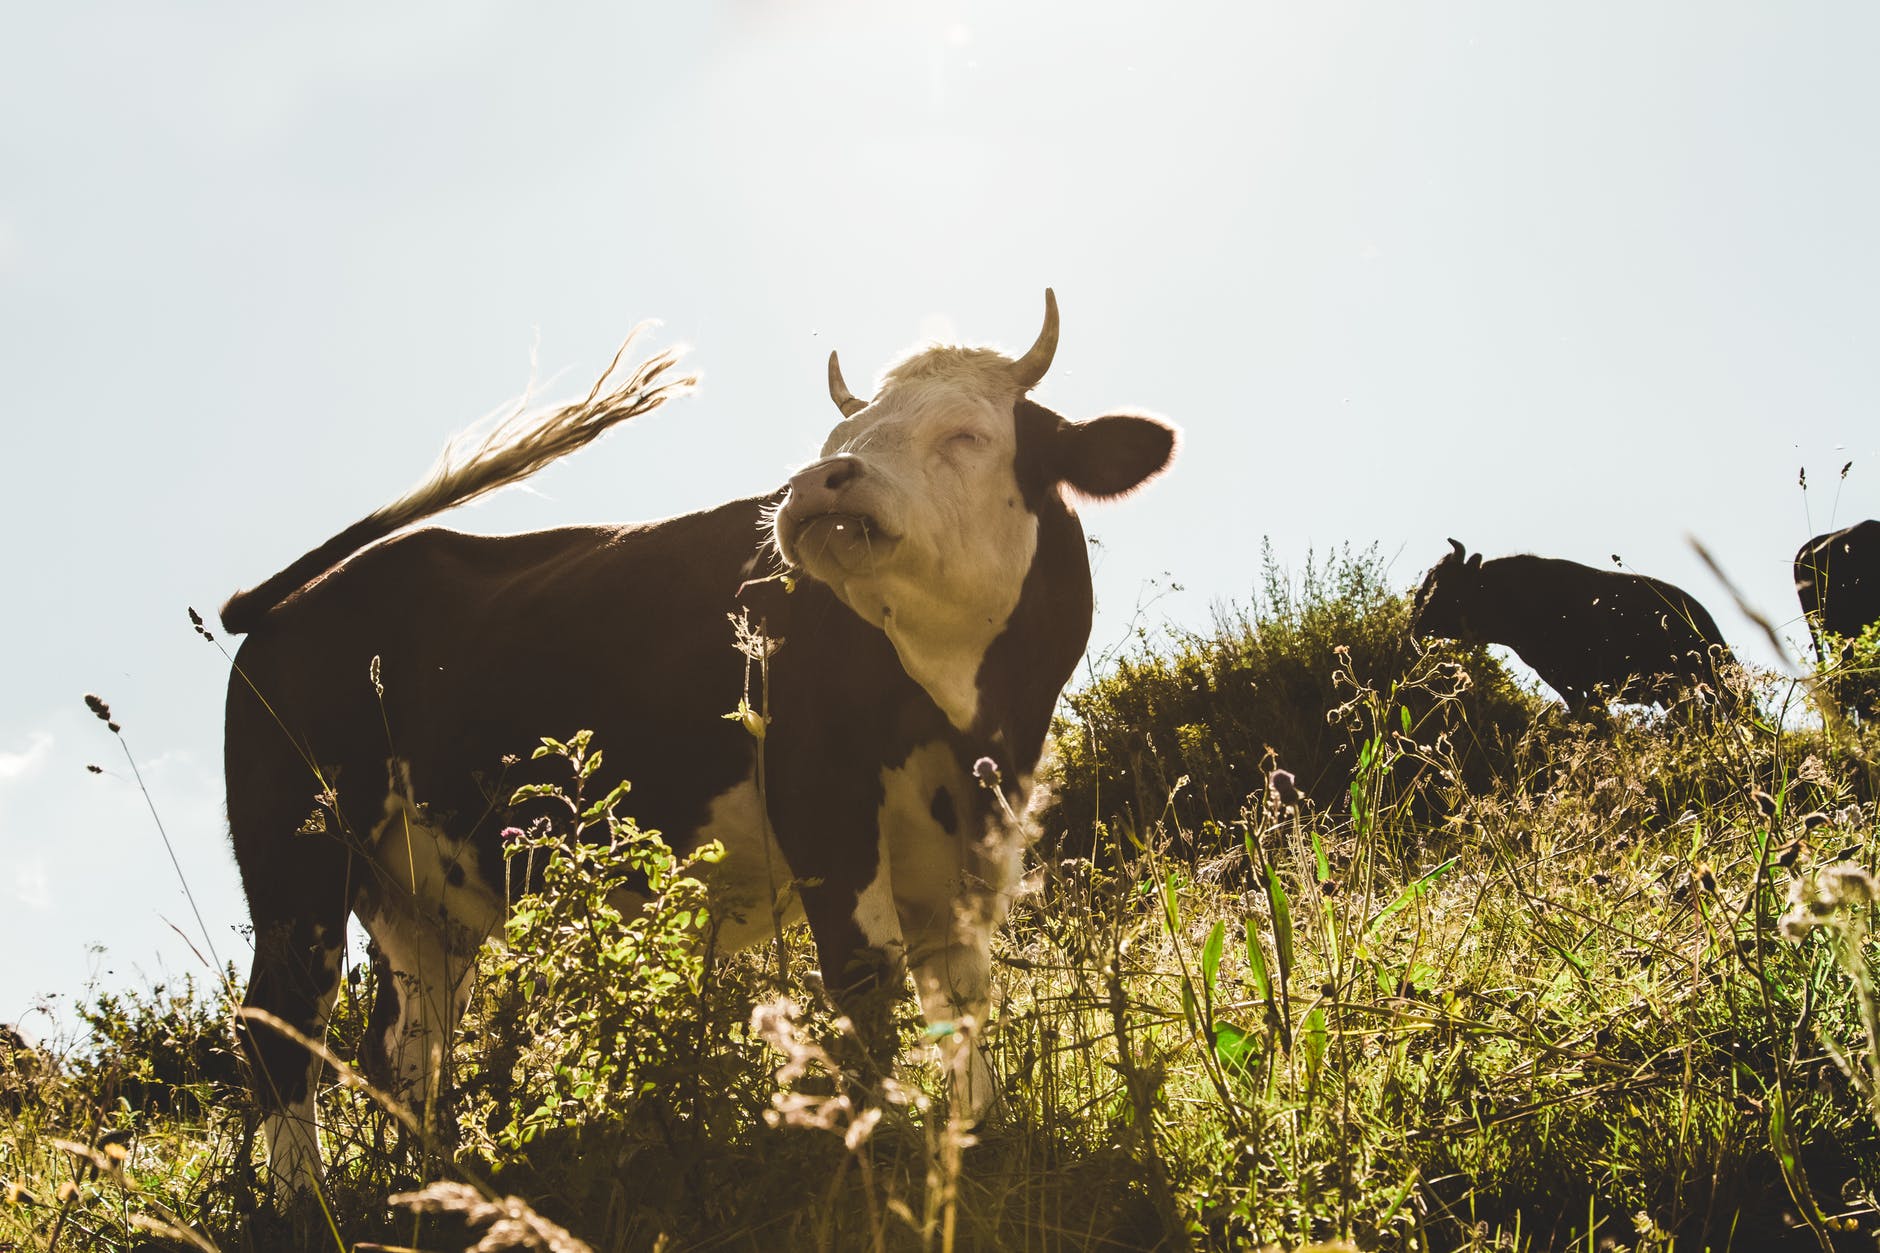 vaca marrón y blanca en un campo de hierba, hablando correctamente en italiano